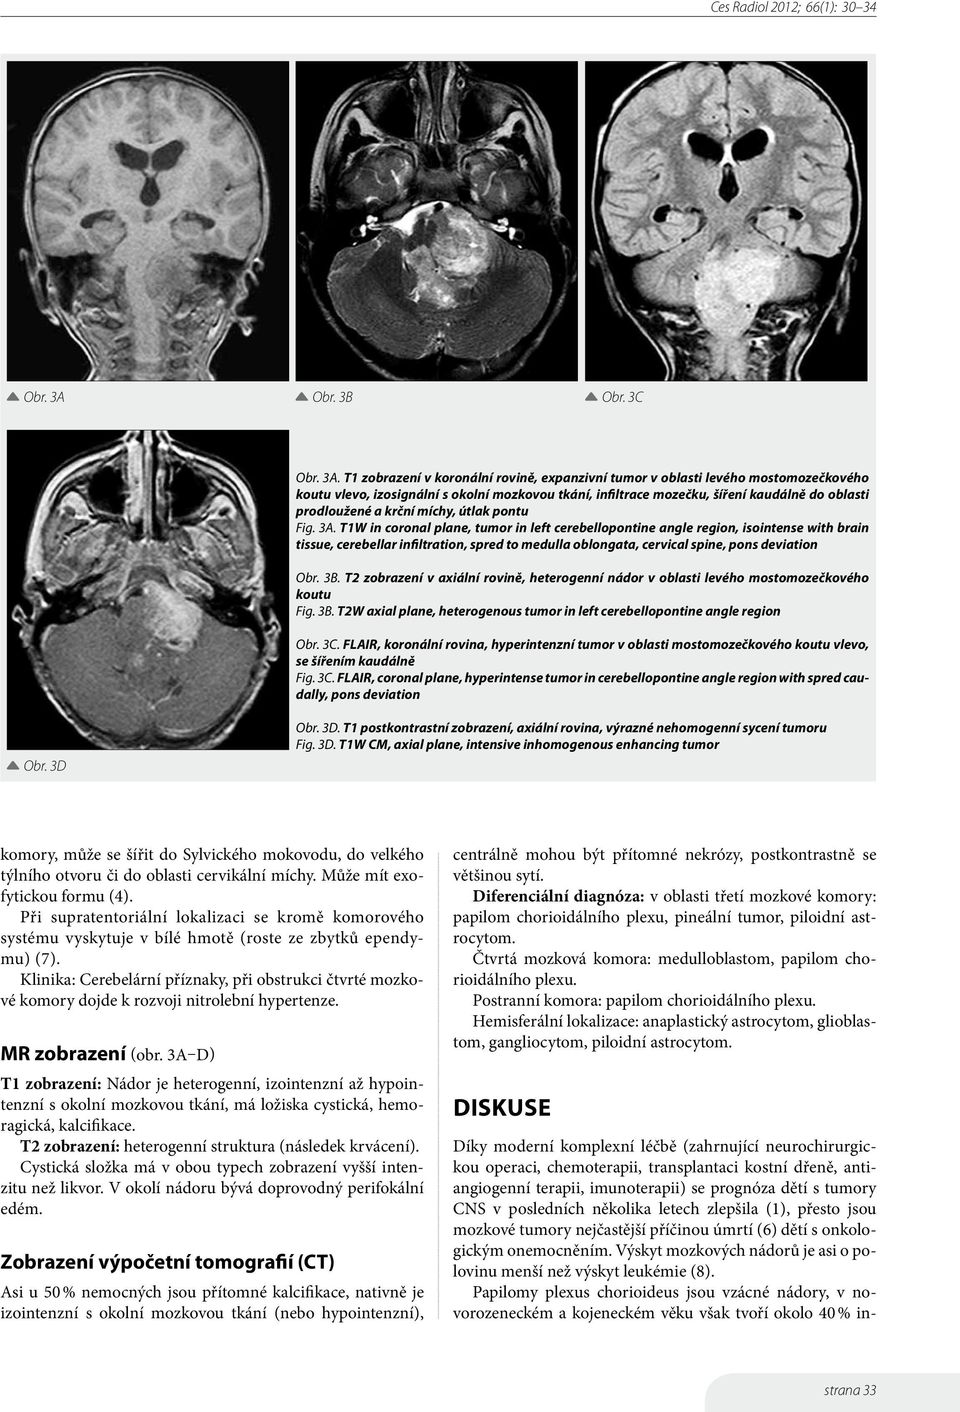 T1 zobrazení v koronální rovině, expanzivní tumor v oblasti levého mostomozečkového koutu vlevo, izosignální s okolní mozkovou tkání, infiltrace mozečku, šíření kaudálně do oblasti prodloužené a